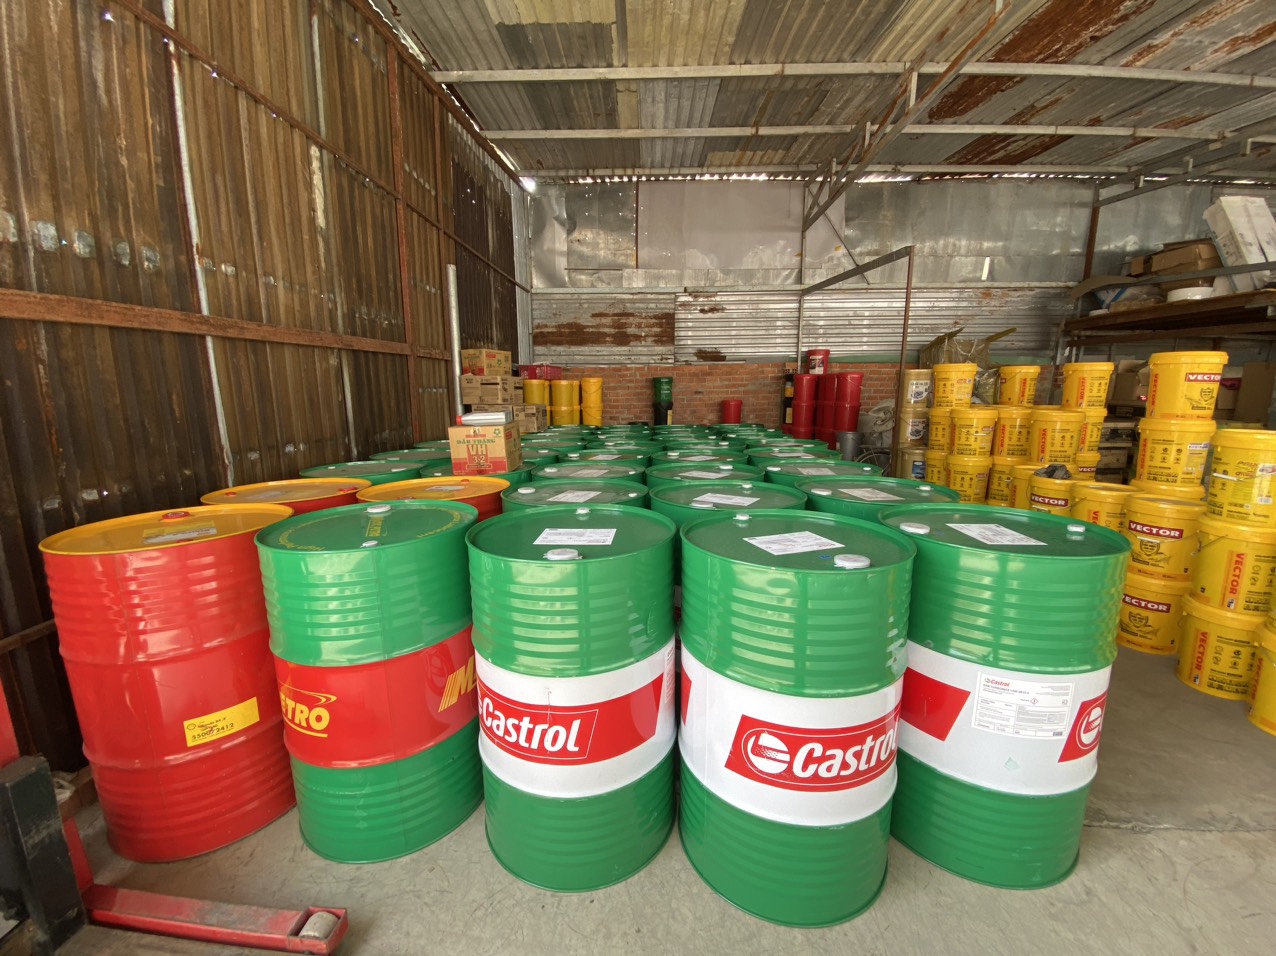 Đại lý phân phối dầu nhớt Castrol Bp chính hãng, giá tốt tại TPHCM.